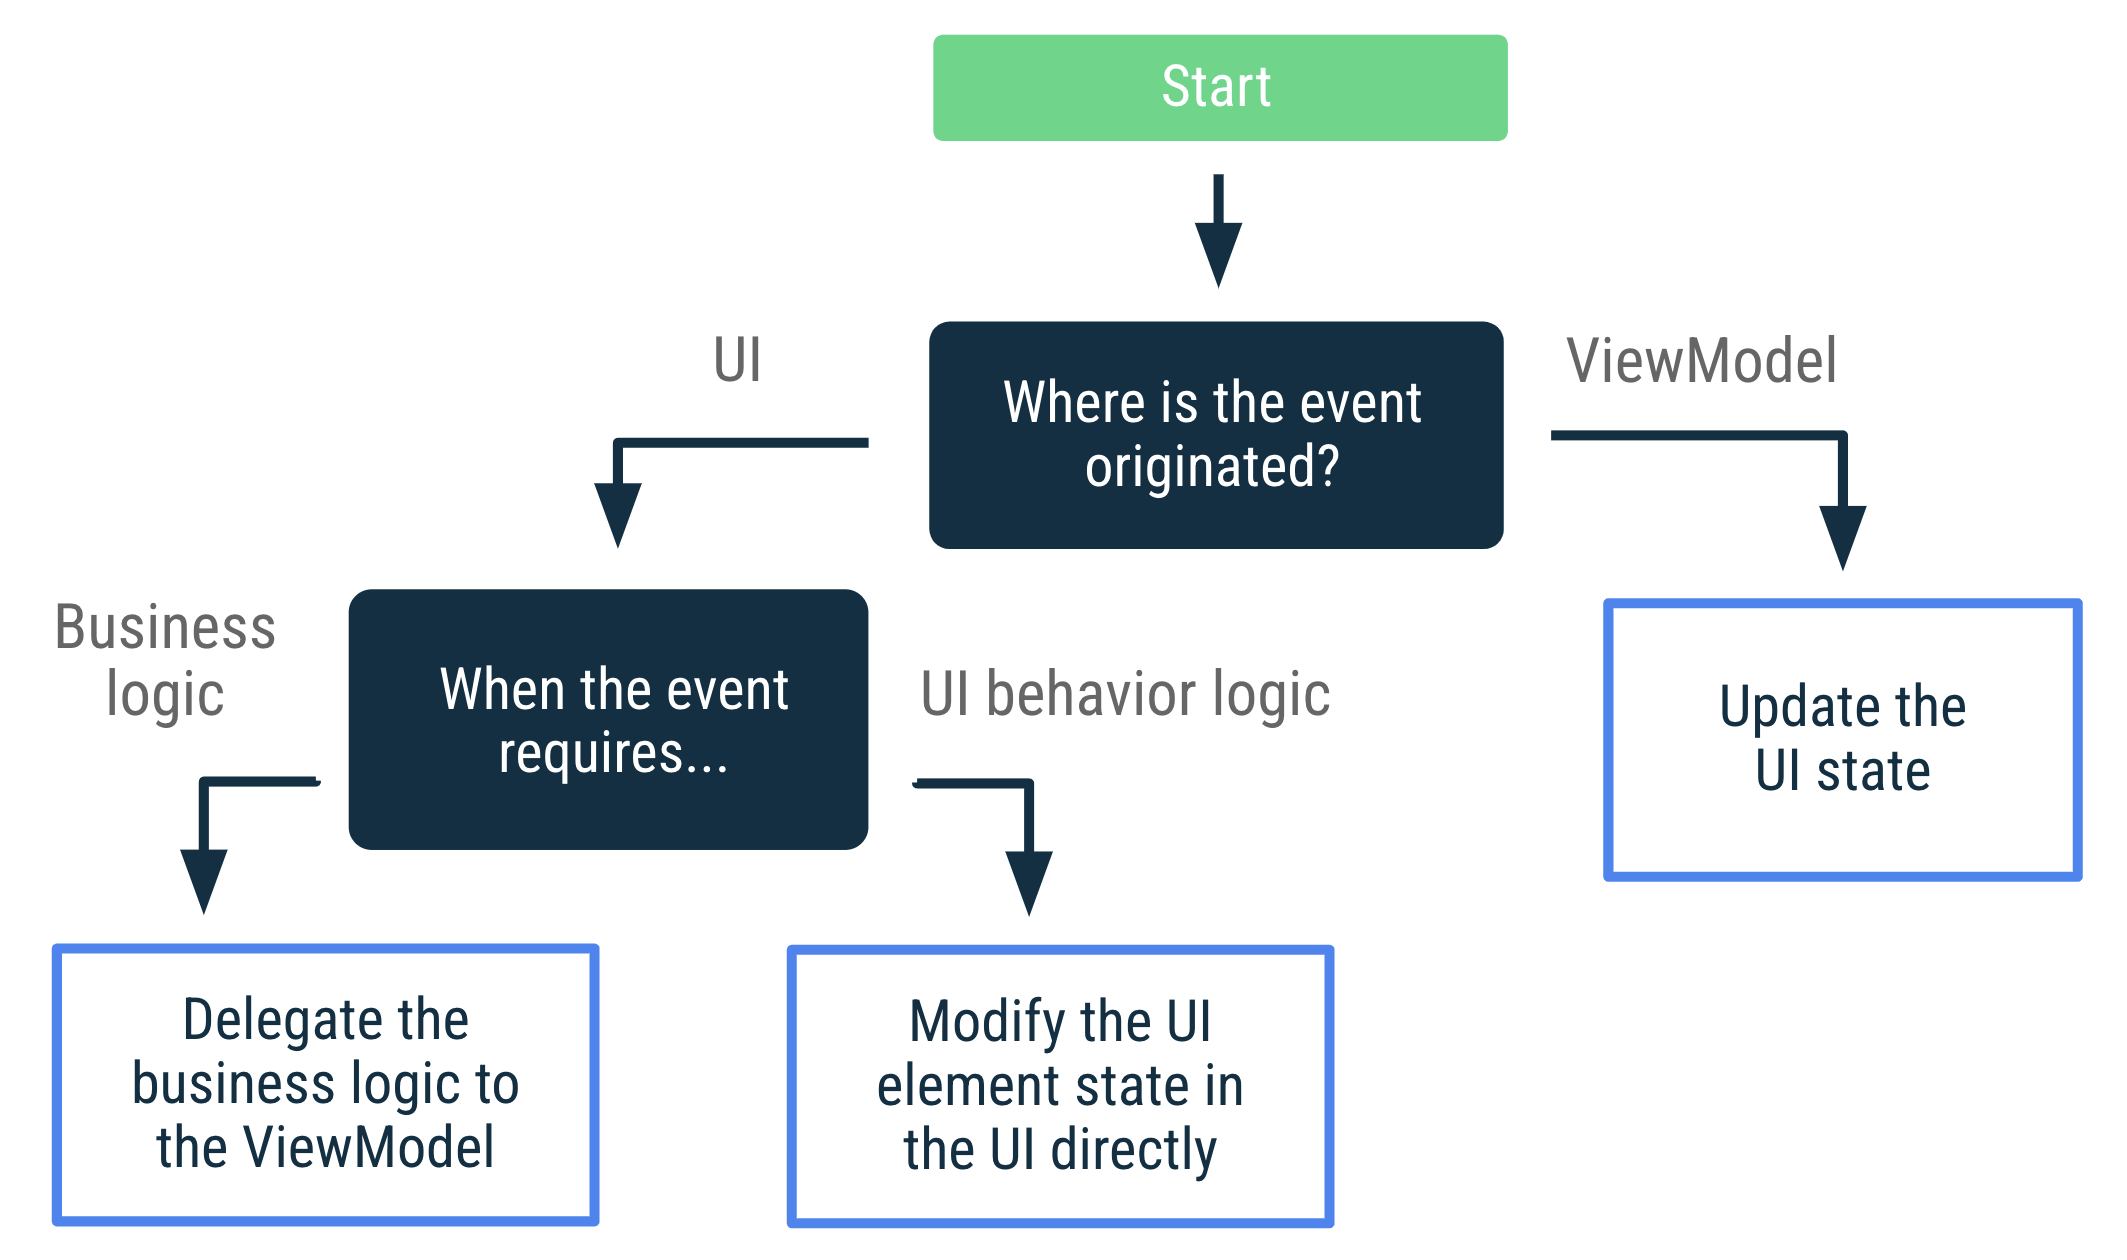 Si el evento se originó en ViewModel, actualiza el estado de la IU. Si el evento se originó en la IU y requiere lógica empresarial, debes delegar esa lógica al ViewModel. Si el evento se originó en la IU y requiere lógica de comportamiento de la IU, modifica el estado del elemento de la IU directamente en ella.